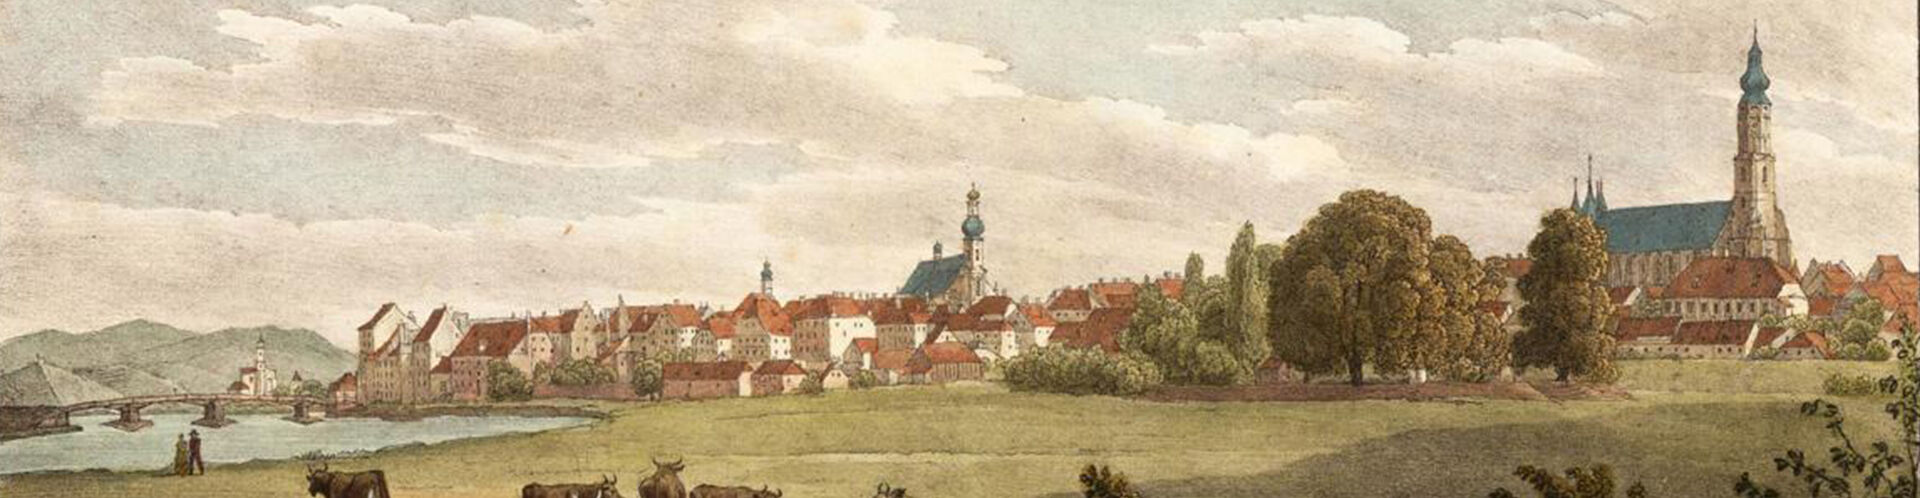 Historische Darstellung der Stadtsilhouette Straubings